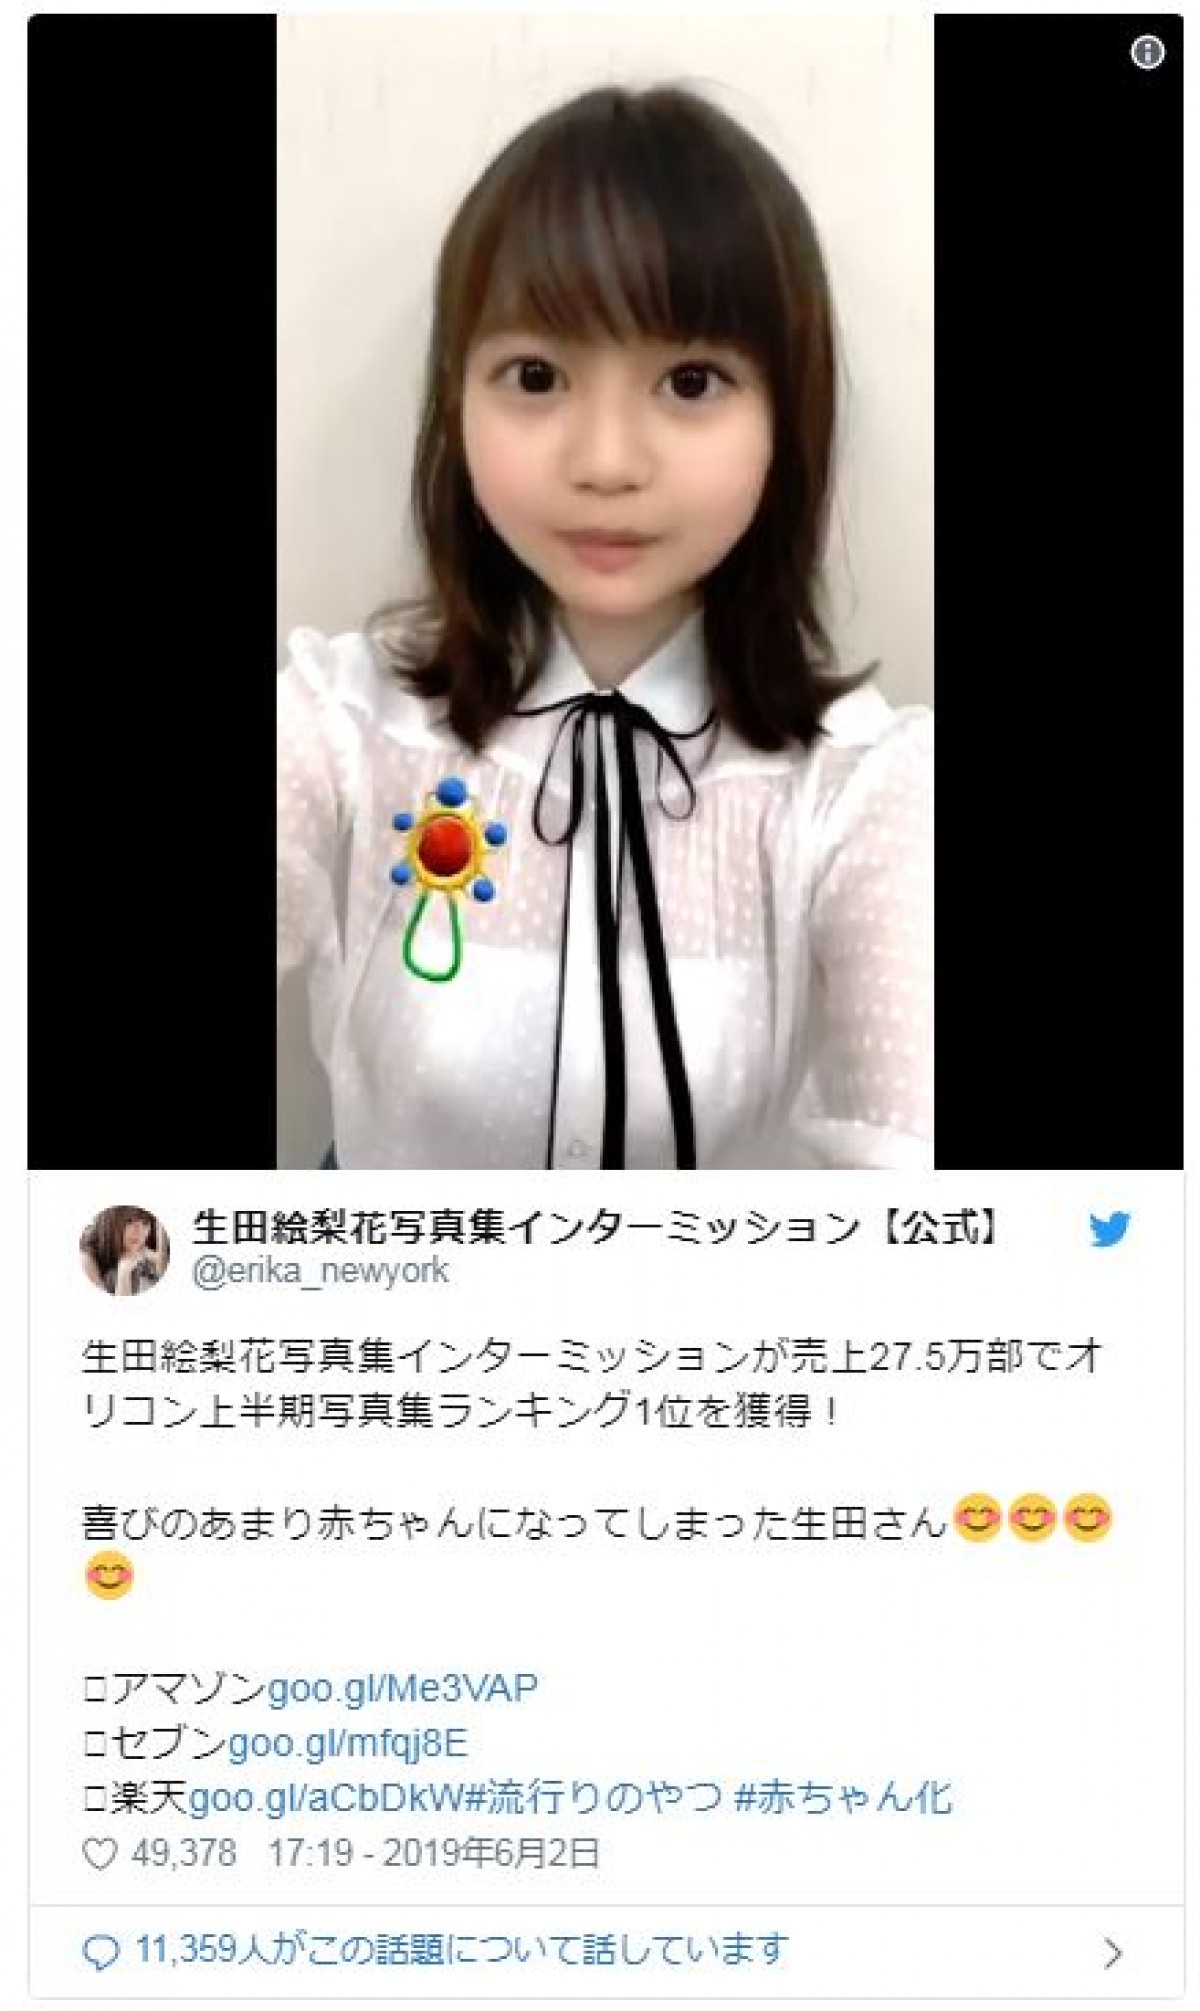 乃木坂46生田絵梨花、美少女すぎる“子ども”動画に反響